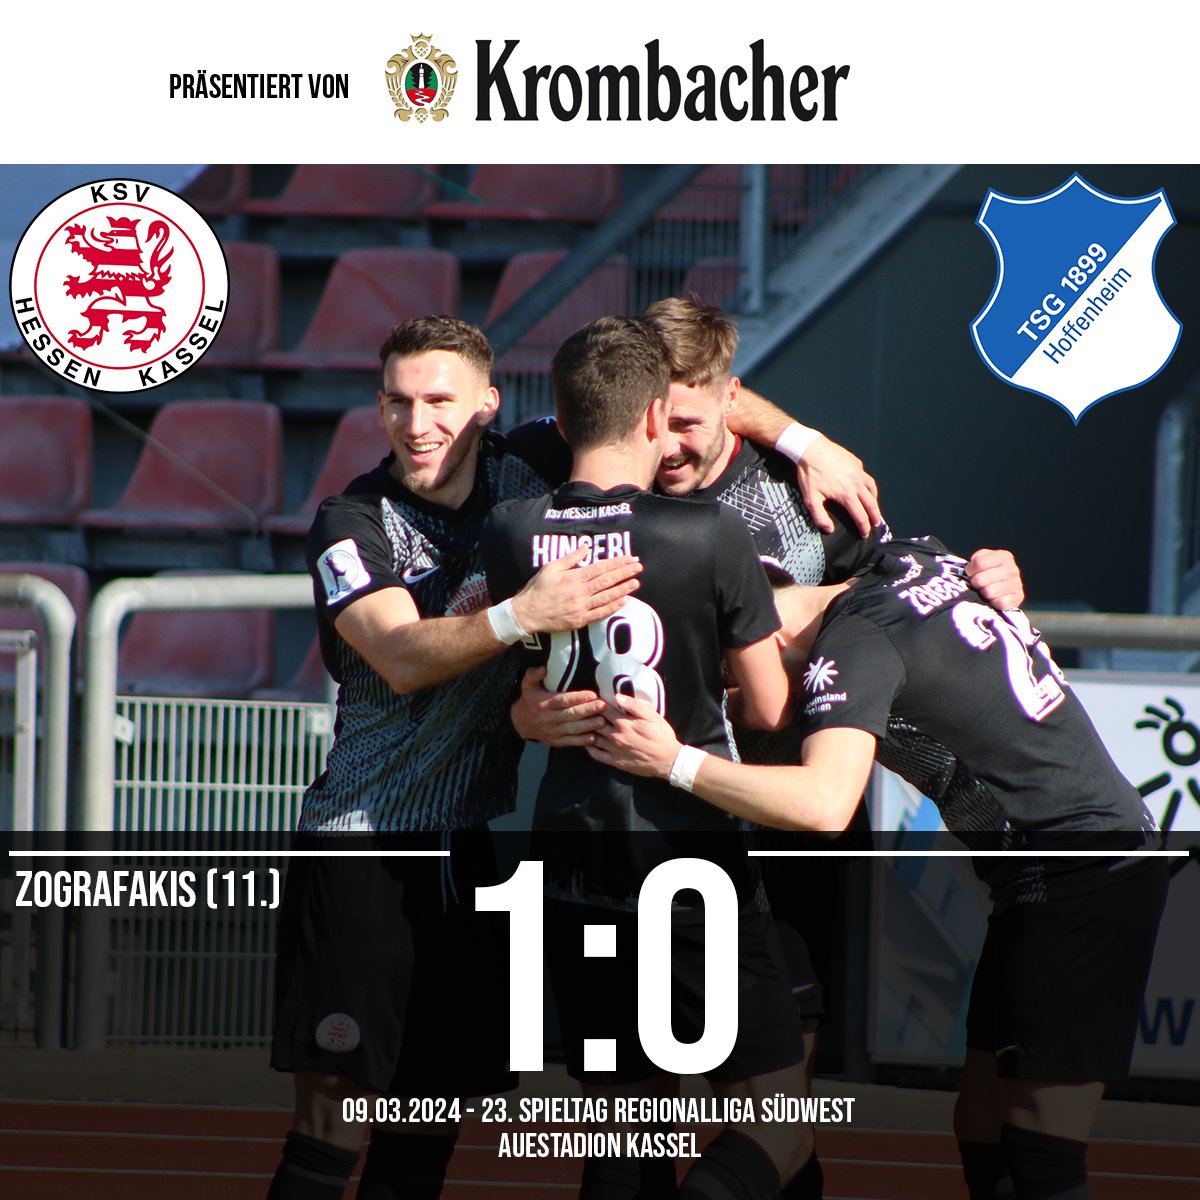 Big Points für die Löwen! Der KSV schlägt den Tabellenzweiten aus Hoffenheim nach einem frühen Treffer von Zografakis mit 1:0 und holt ganz wichtige Punkte im Kampf um den Klassenerhalt 💪🦁 Ganz stark gemacht, Jungs! #ksvhessen #kassel #ksvhessenkassel #löwen #ksvtsg